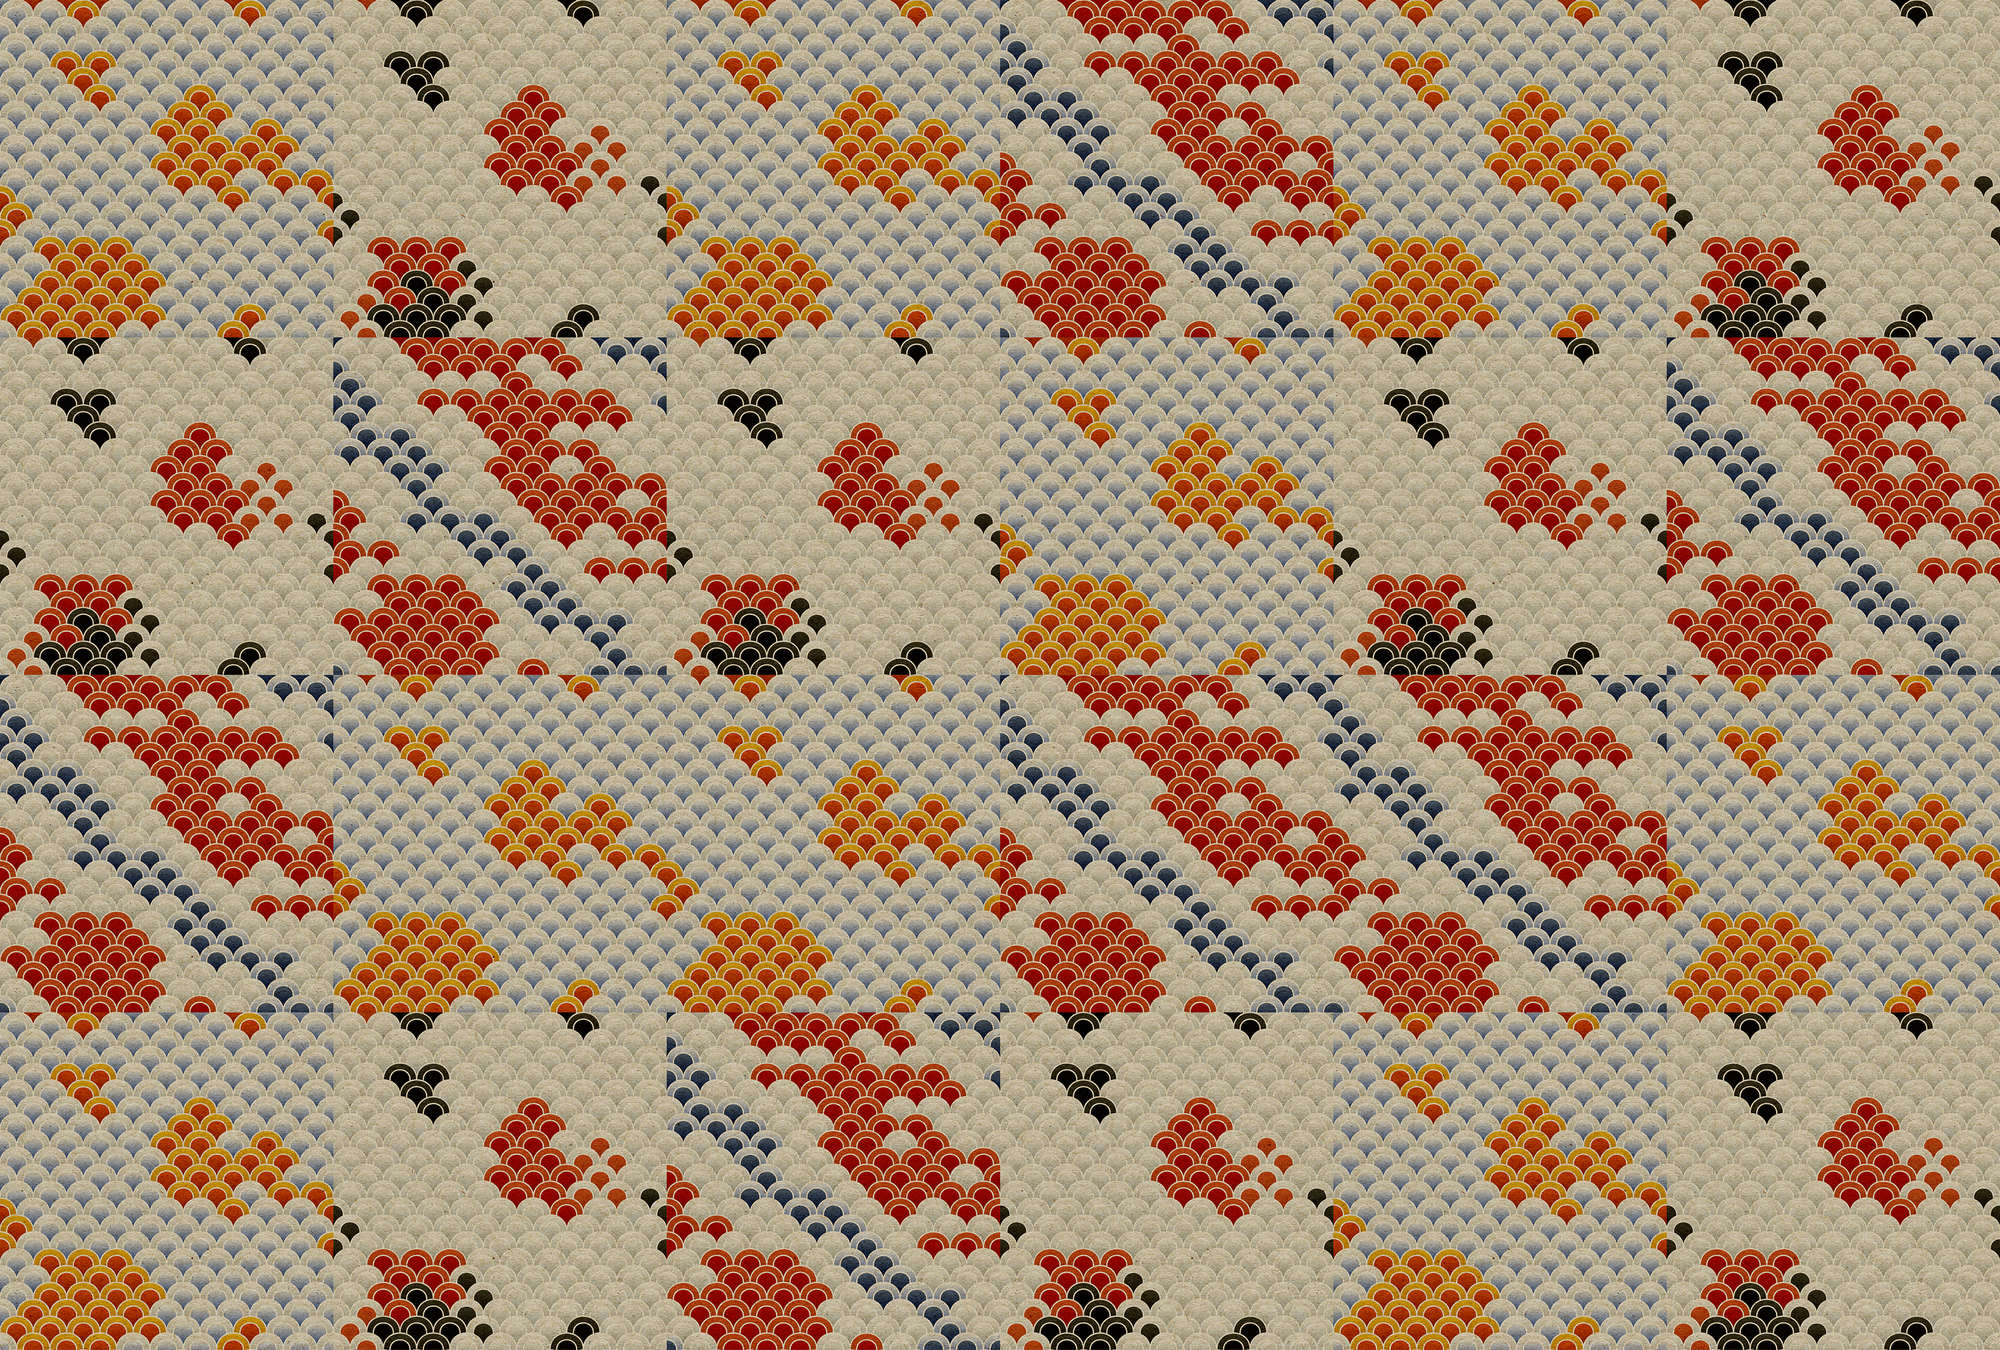             Koi 3 - Abstrakter Koi-Teich als Digitaldruck auf Pappe Struktur – Beige, Orange | Mattes Glattvlies
        